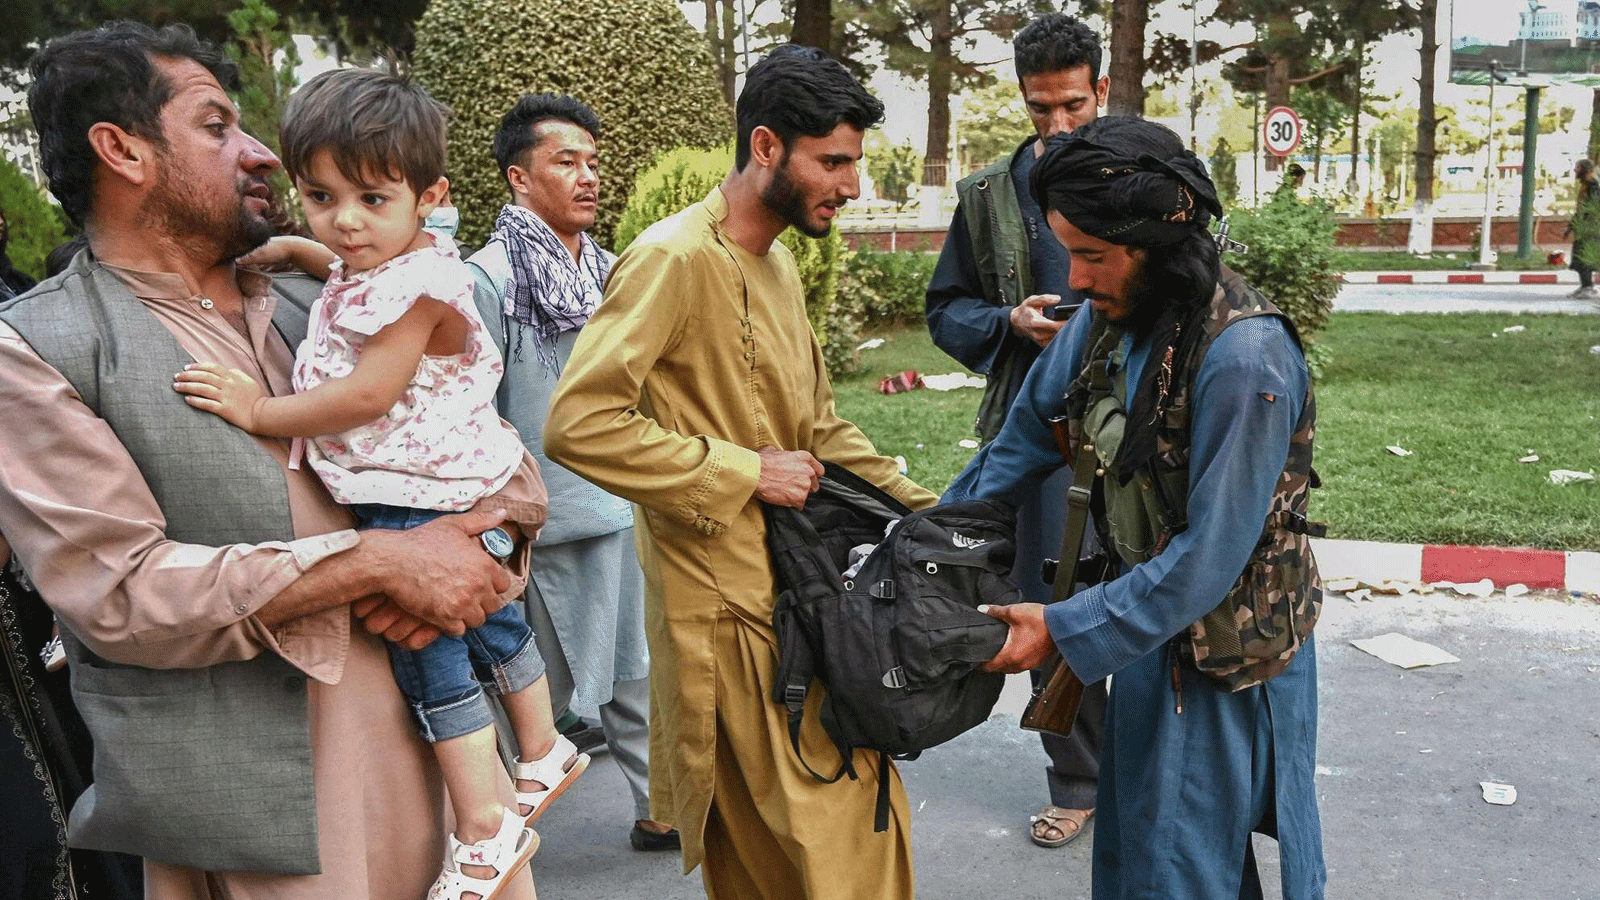 مقاتل من طالبان يفتش حقائب الأشخاص القادمين من مطار كابول. أفغانستان في 16 آب/ أغسطس 2021